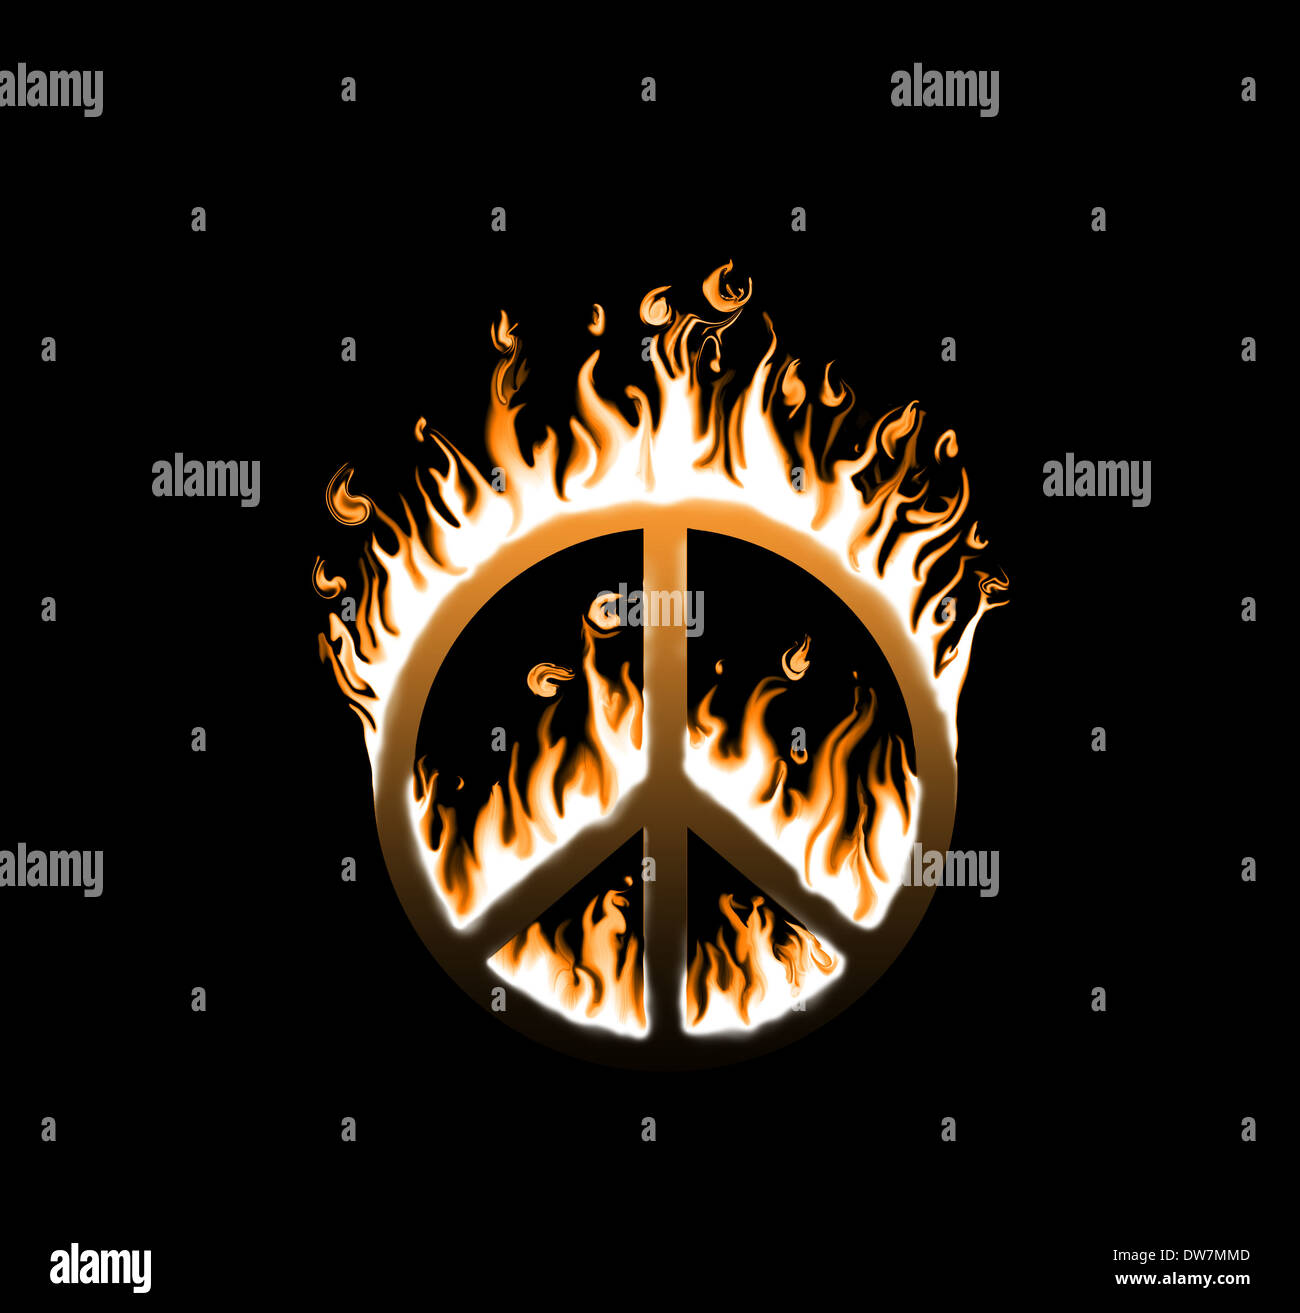 Símbolo de paz en llamas - concepto de paz en peligro Foto de stock